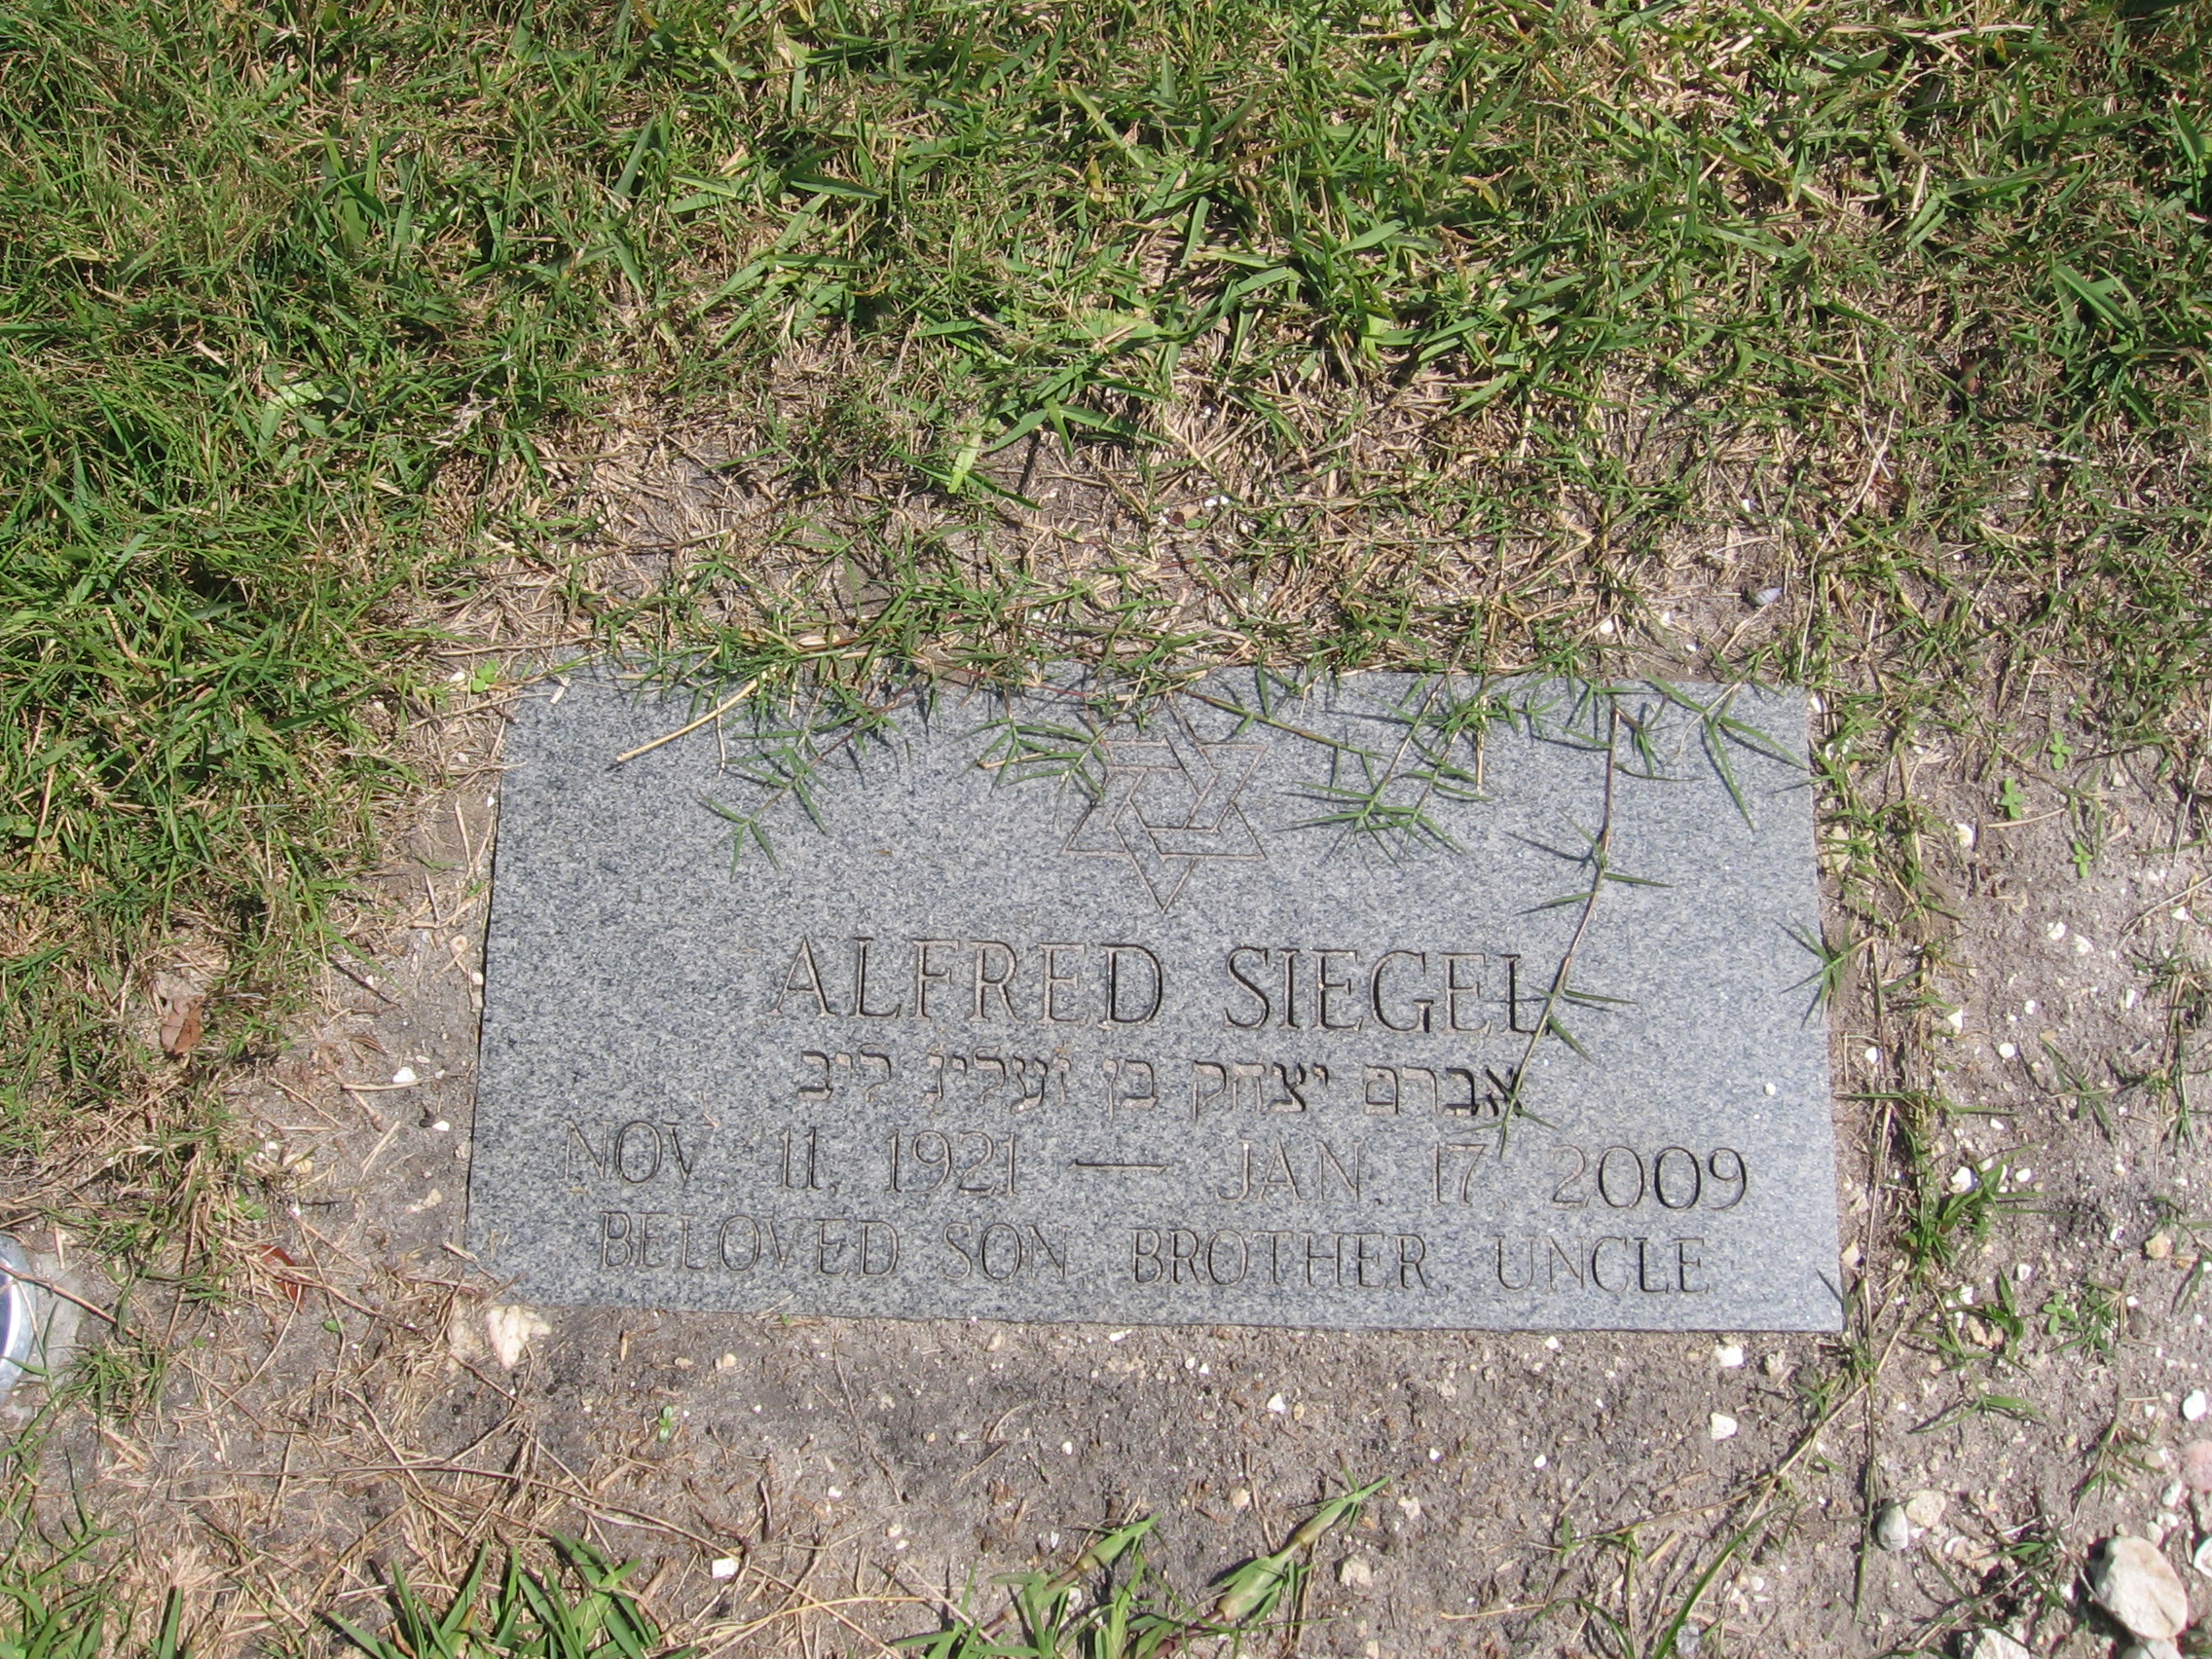 Alfred Siegel